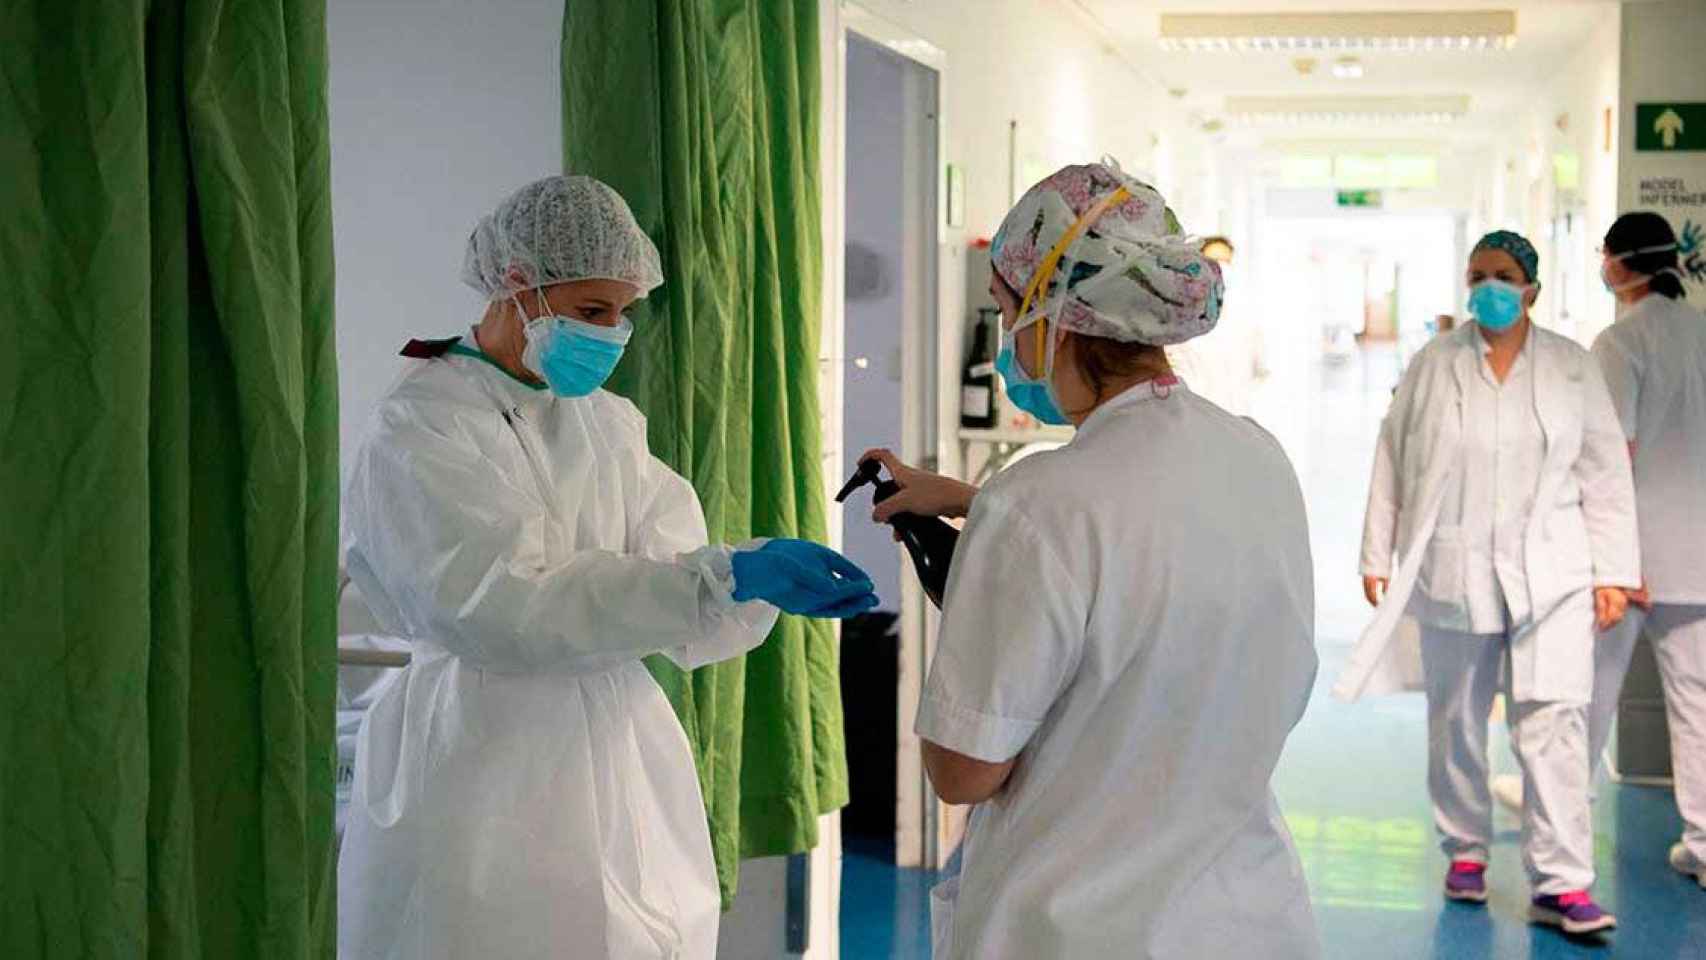 Dos sanitarias protegidas contra el Covid-19 en el Hospital Clínic Barcelona, el centro que se fusionará con el Plató en una operación que el Govern deberá explicar / CG